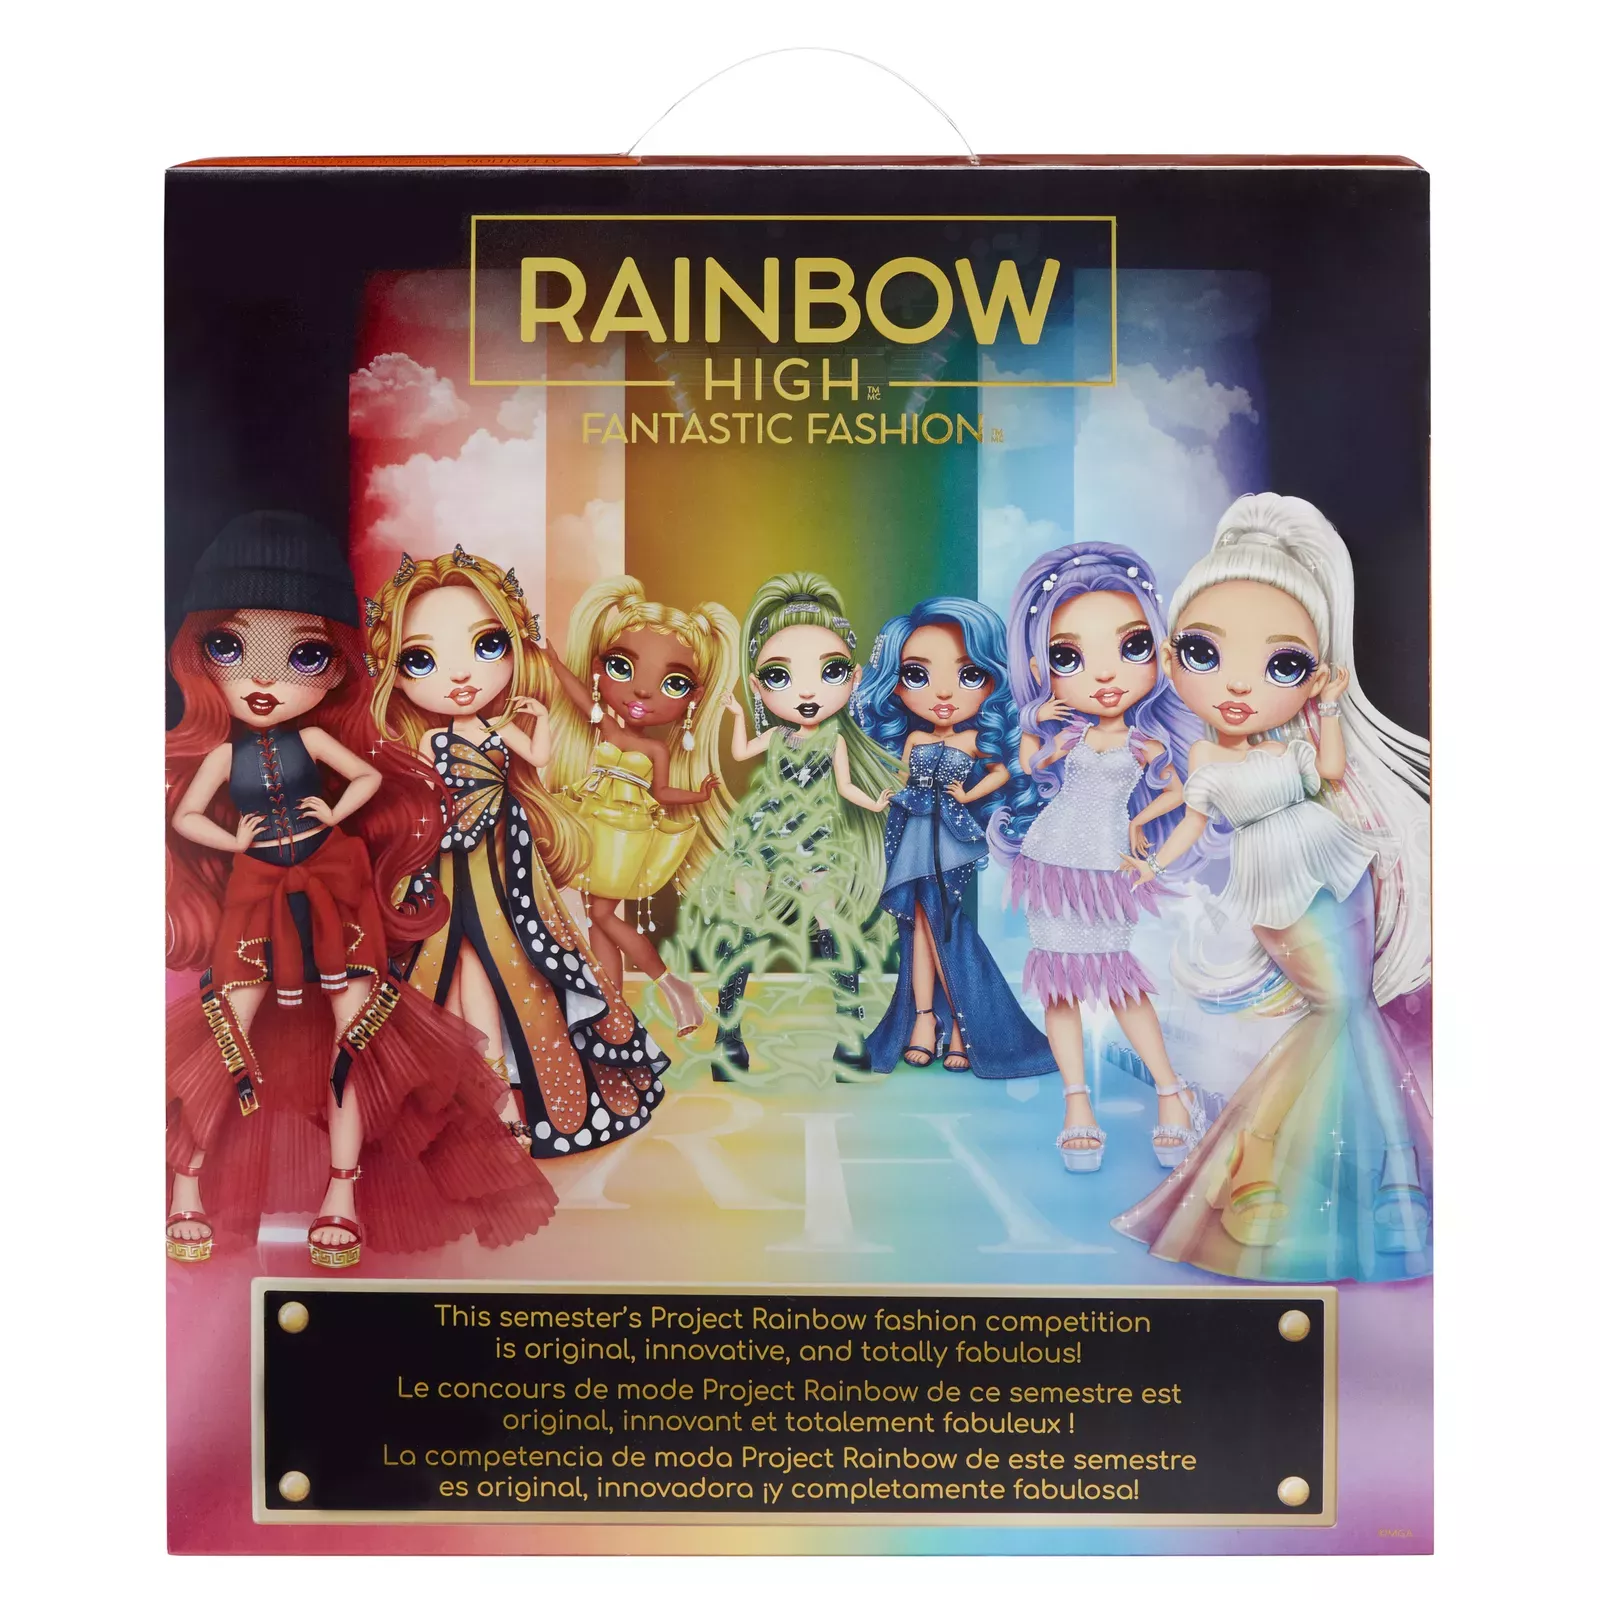 Poppy Rowan - Project Rainbow - Rainbow High doll